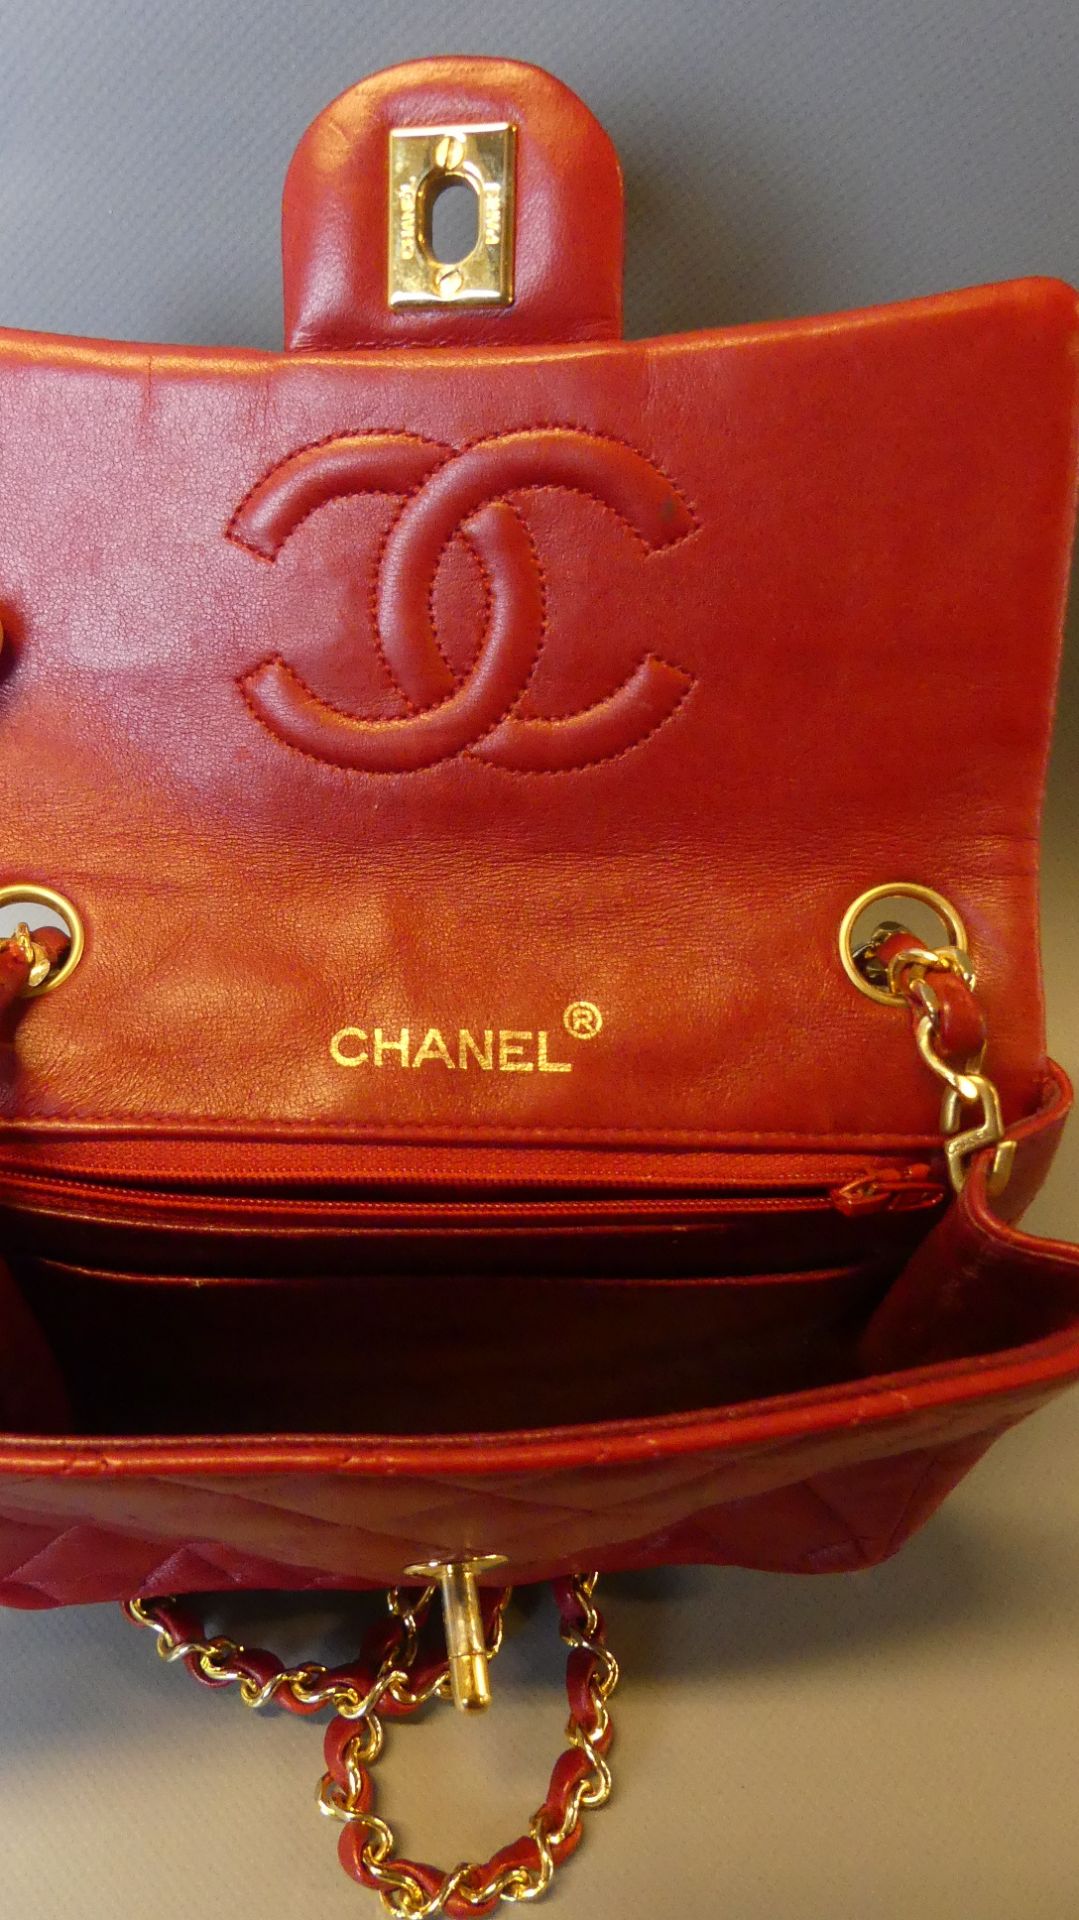 Chanel, Paris, Damenhandtasche, "Mini Flap Bag" rotes Leder, - Bild 4 aus 5